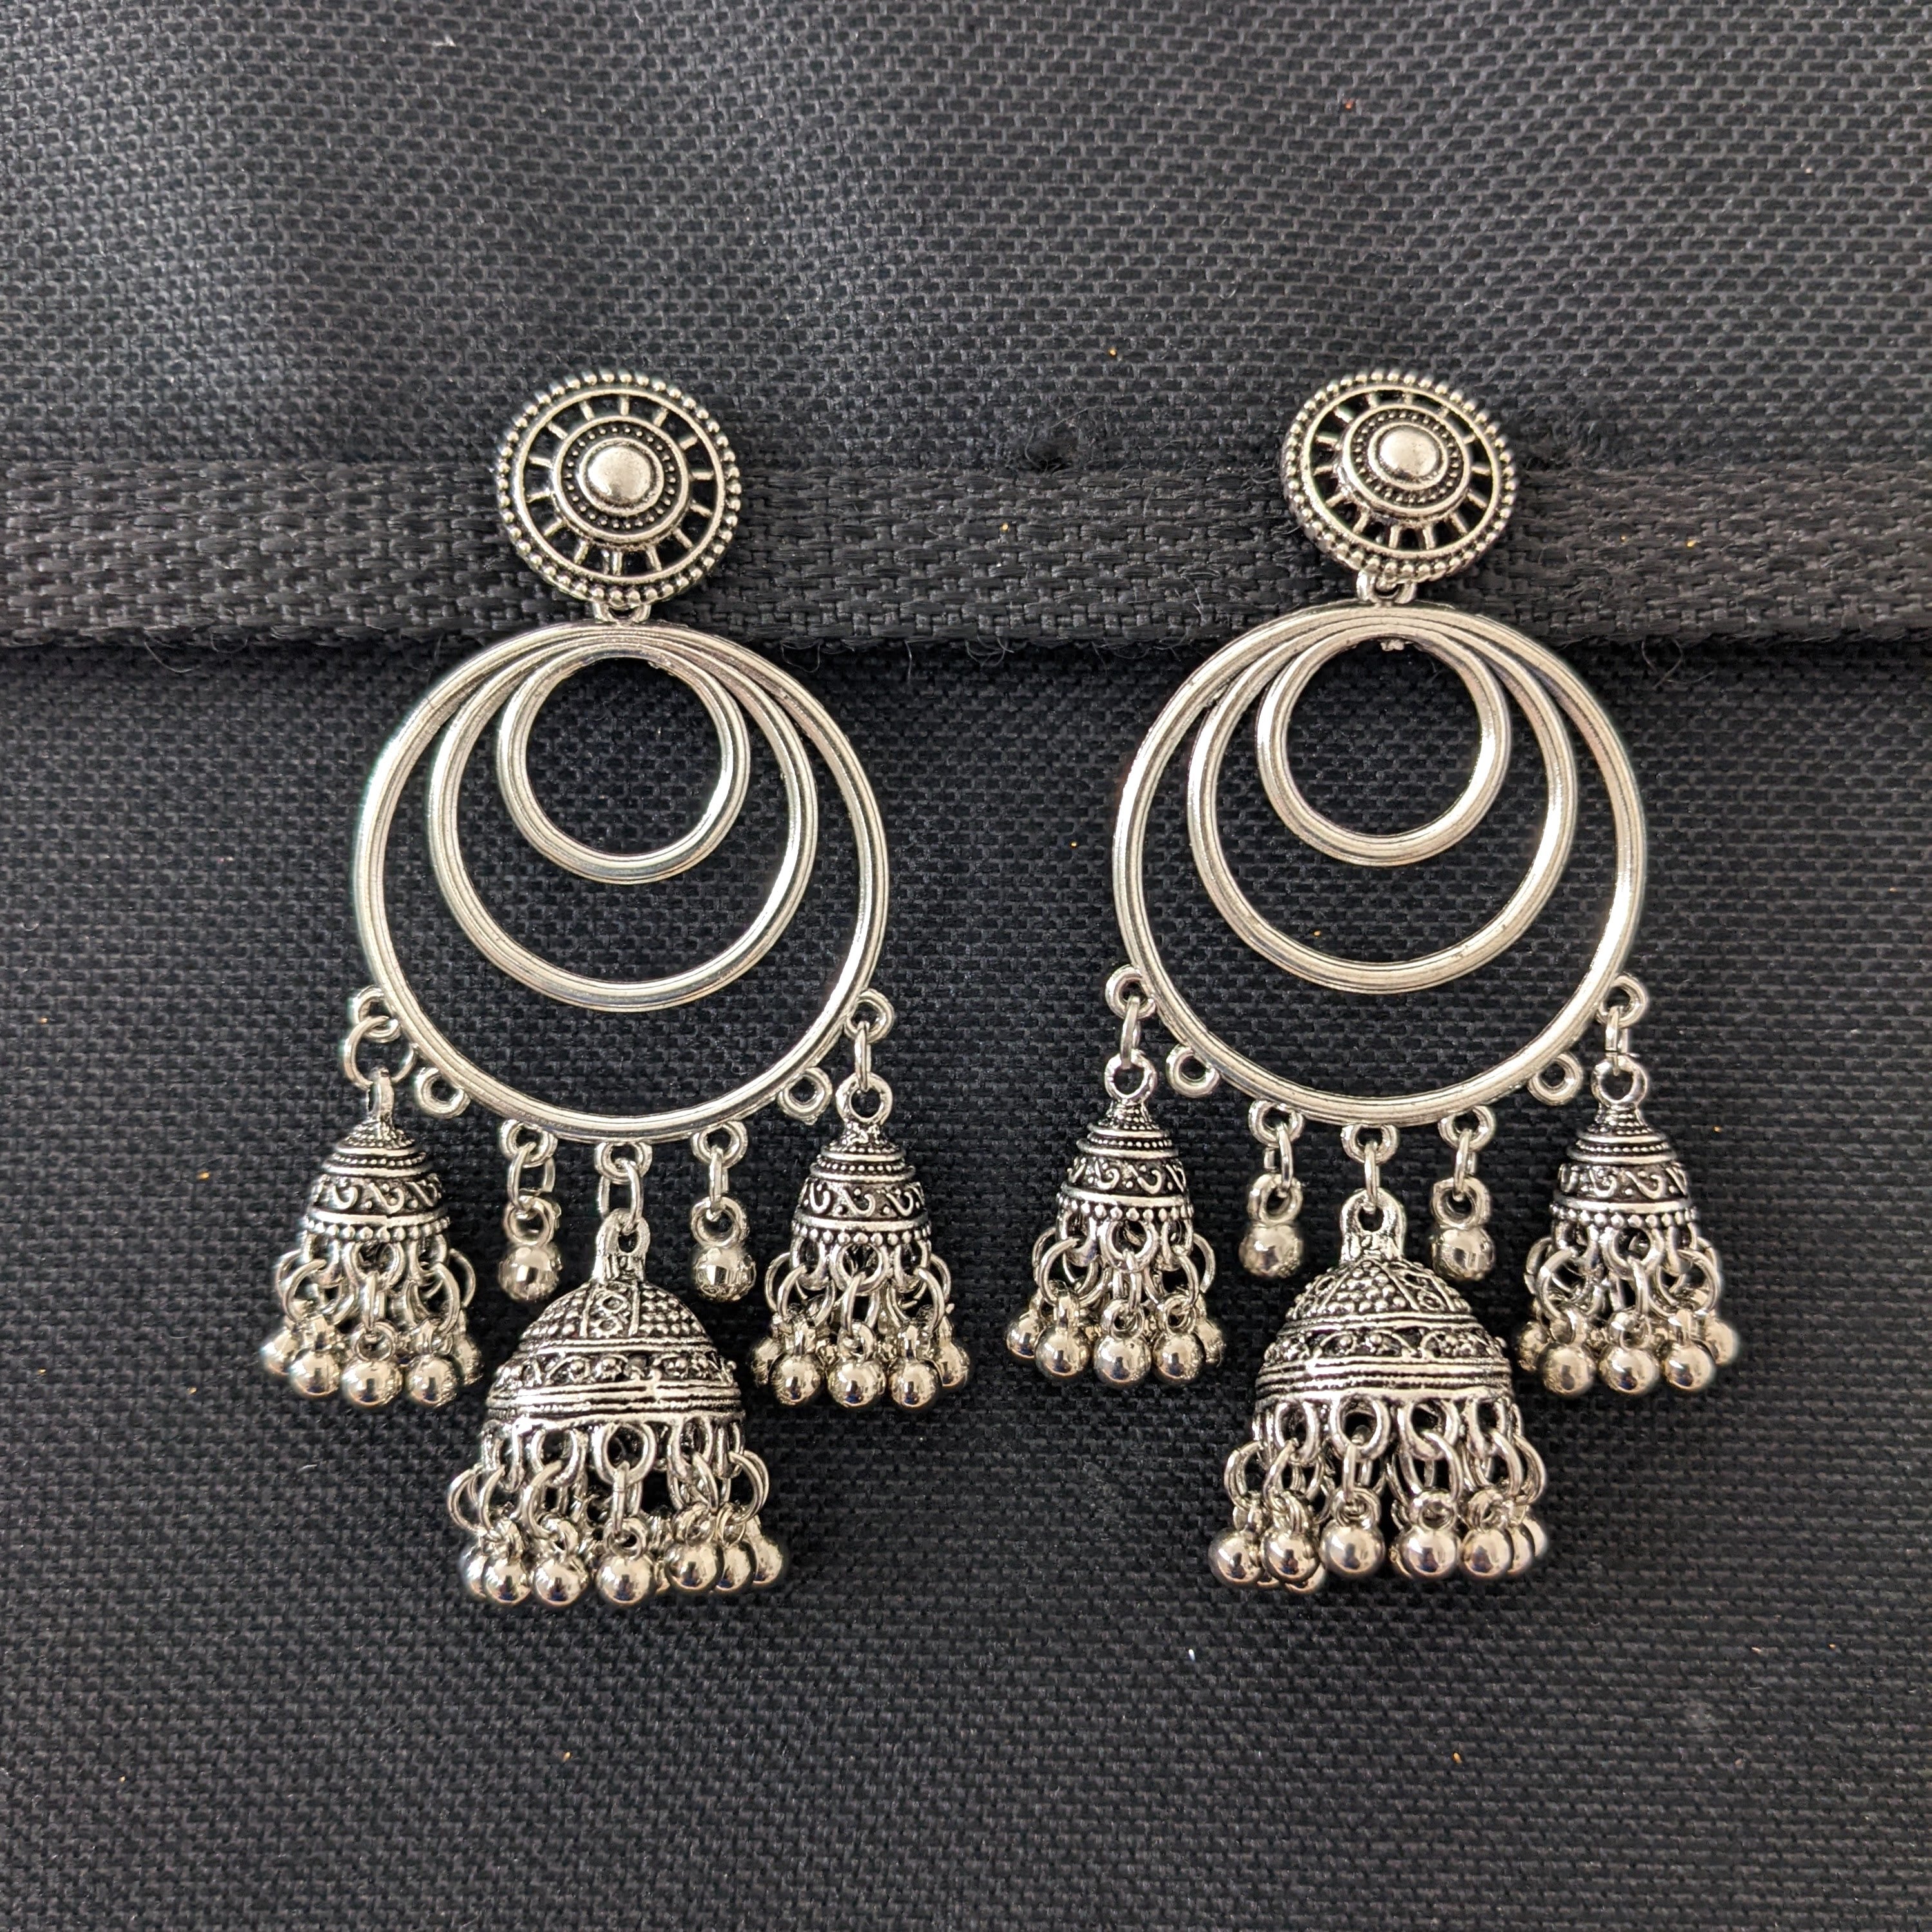 Buy Oxidised German Silver Black Star Look Design Earrings at Amazon.in